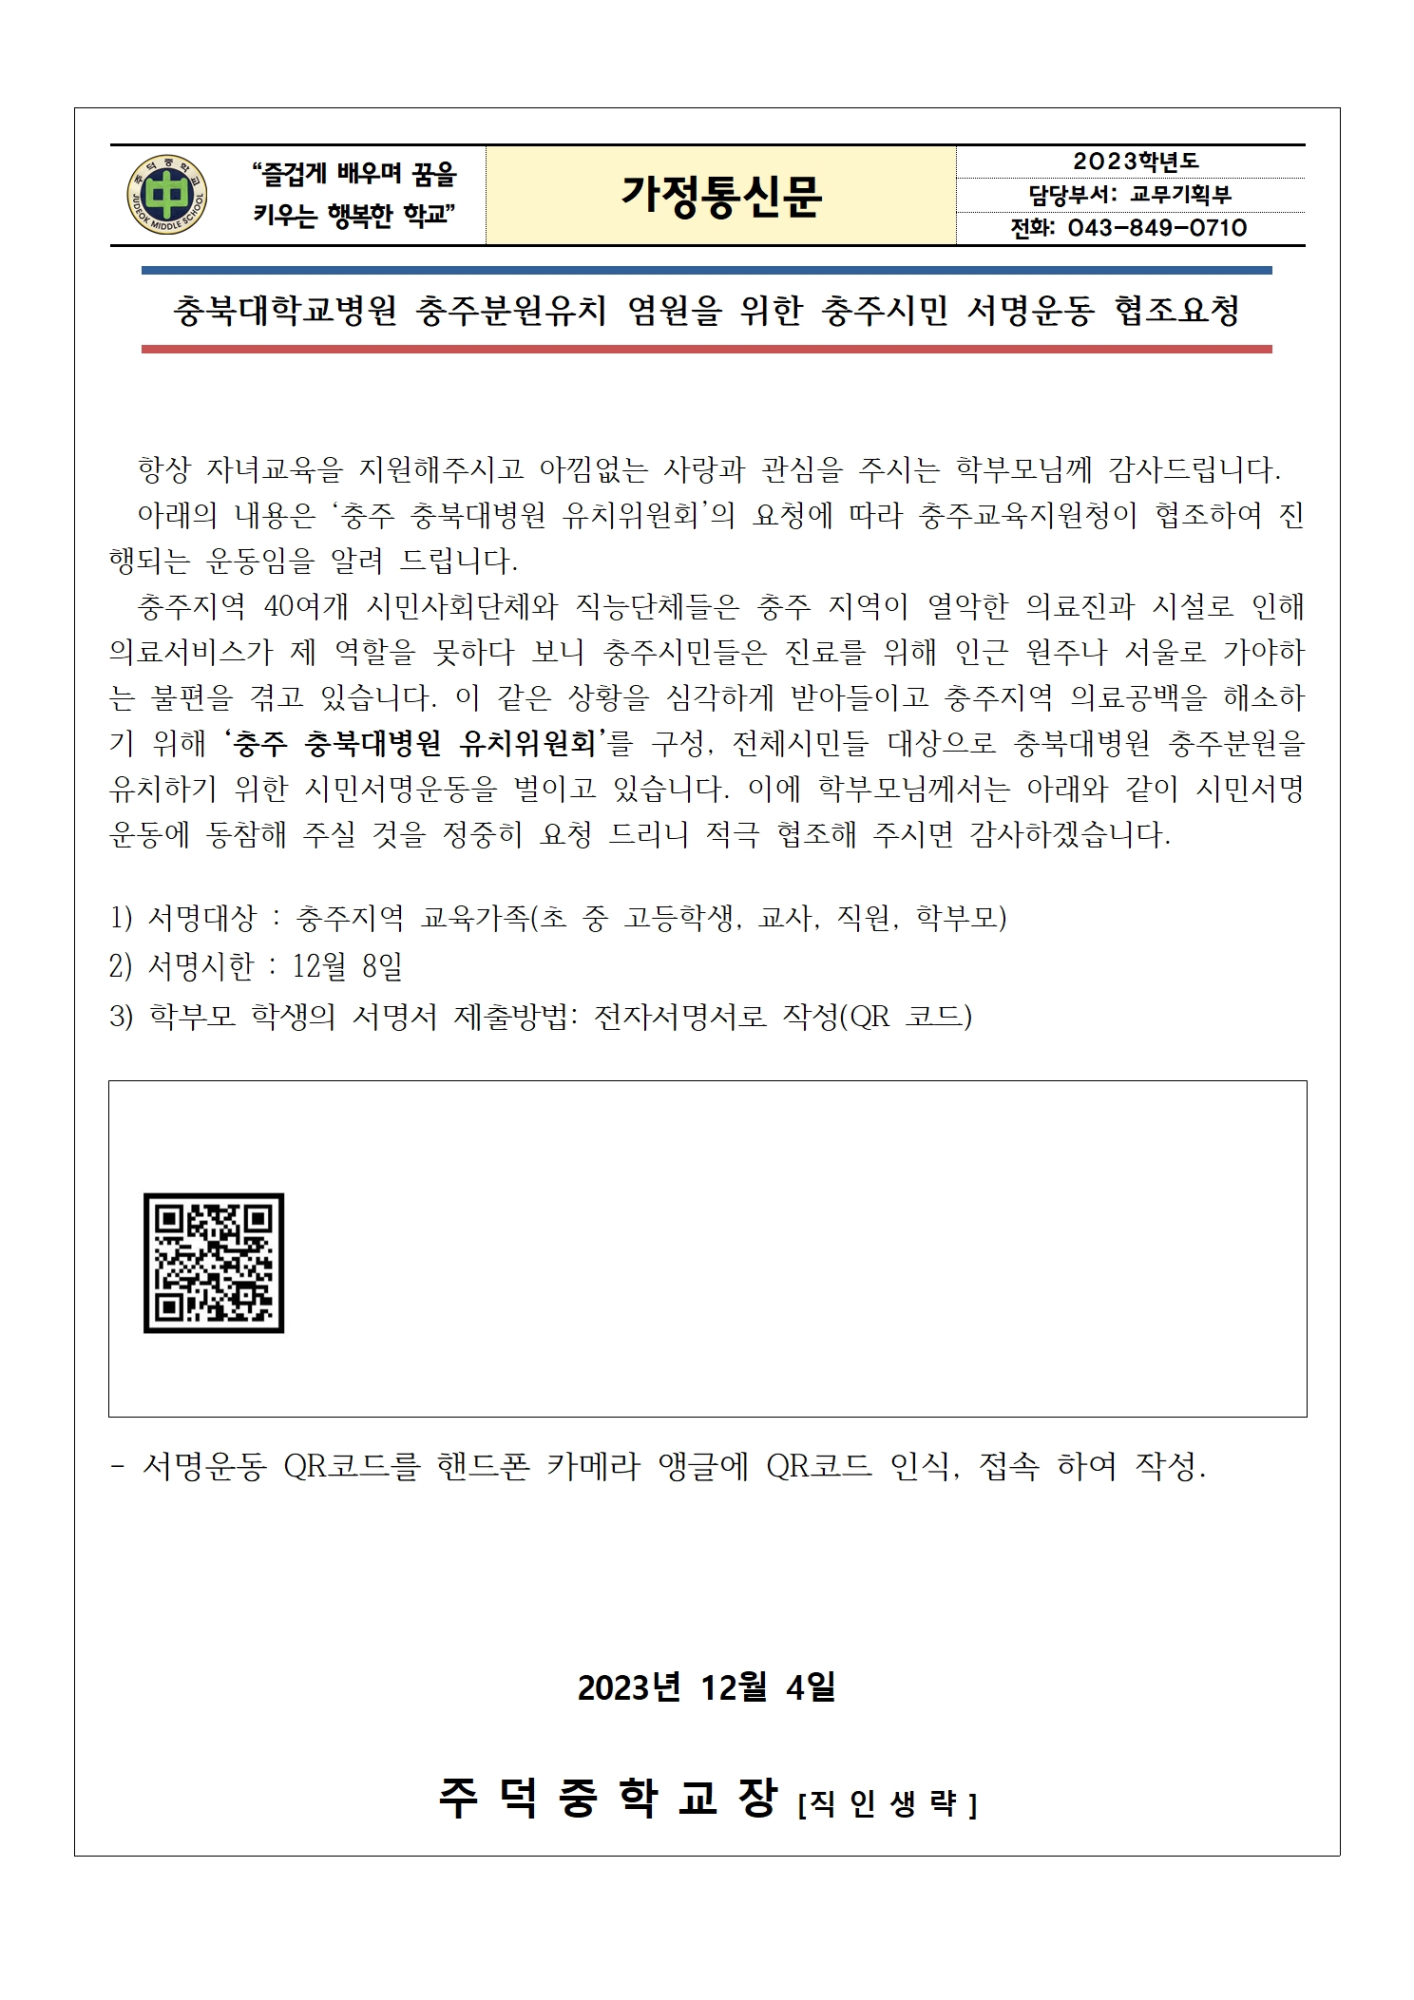 충북대학교병원 충주분원 유치 안내 가정통신문001